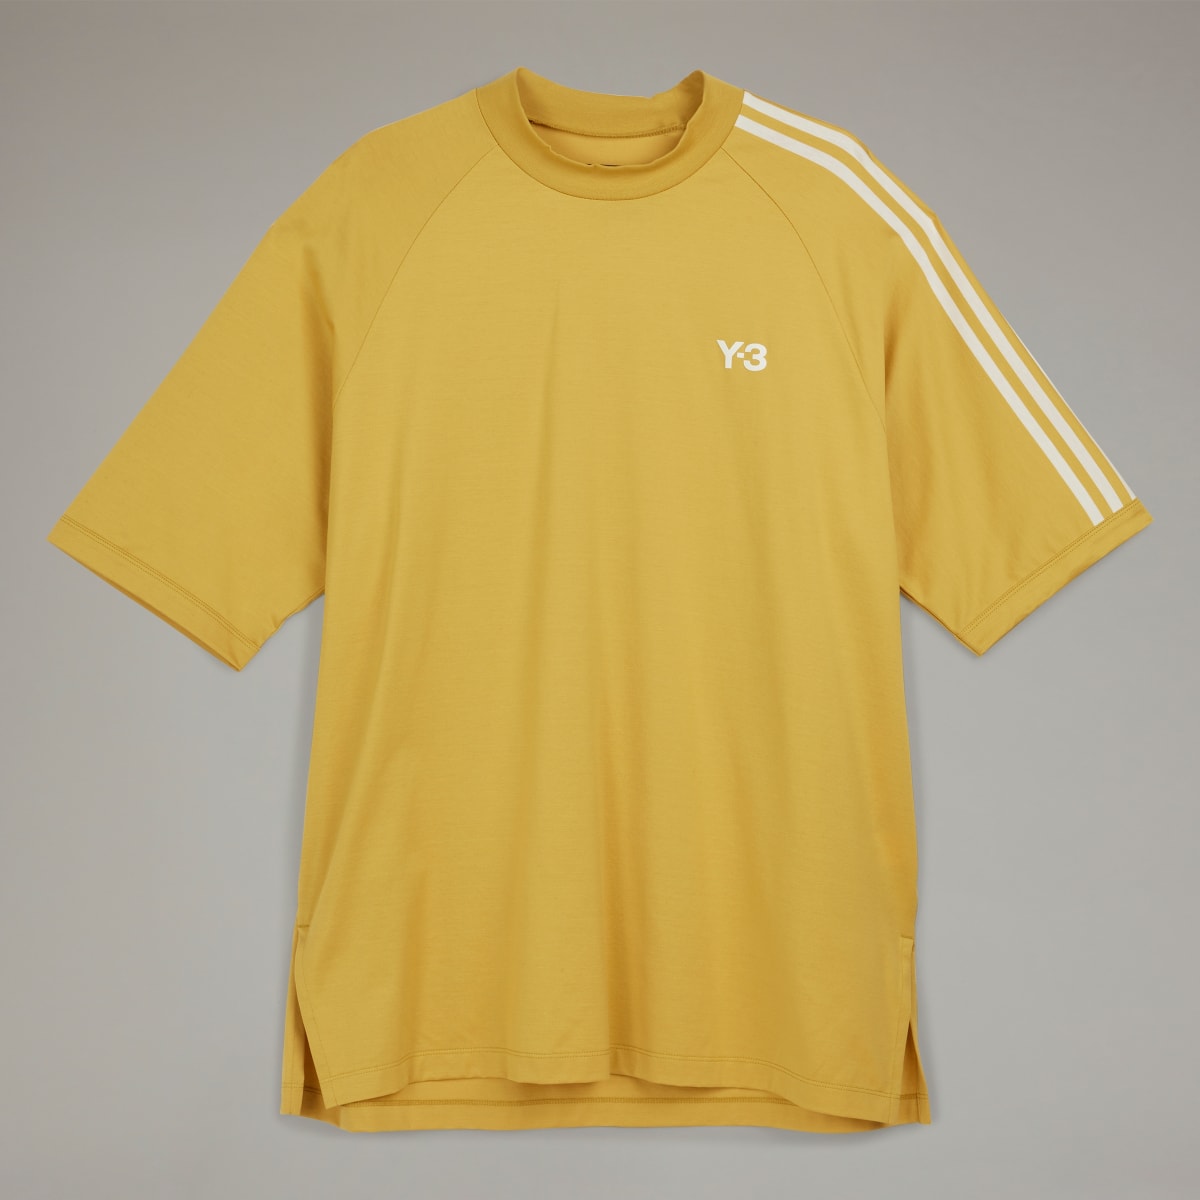 Adidas Y-3 3-Stripes T-Shirt. 5